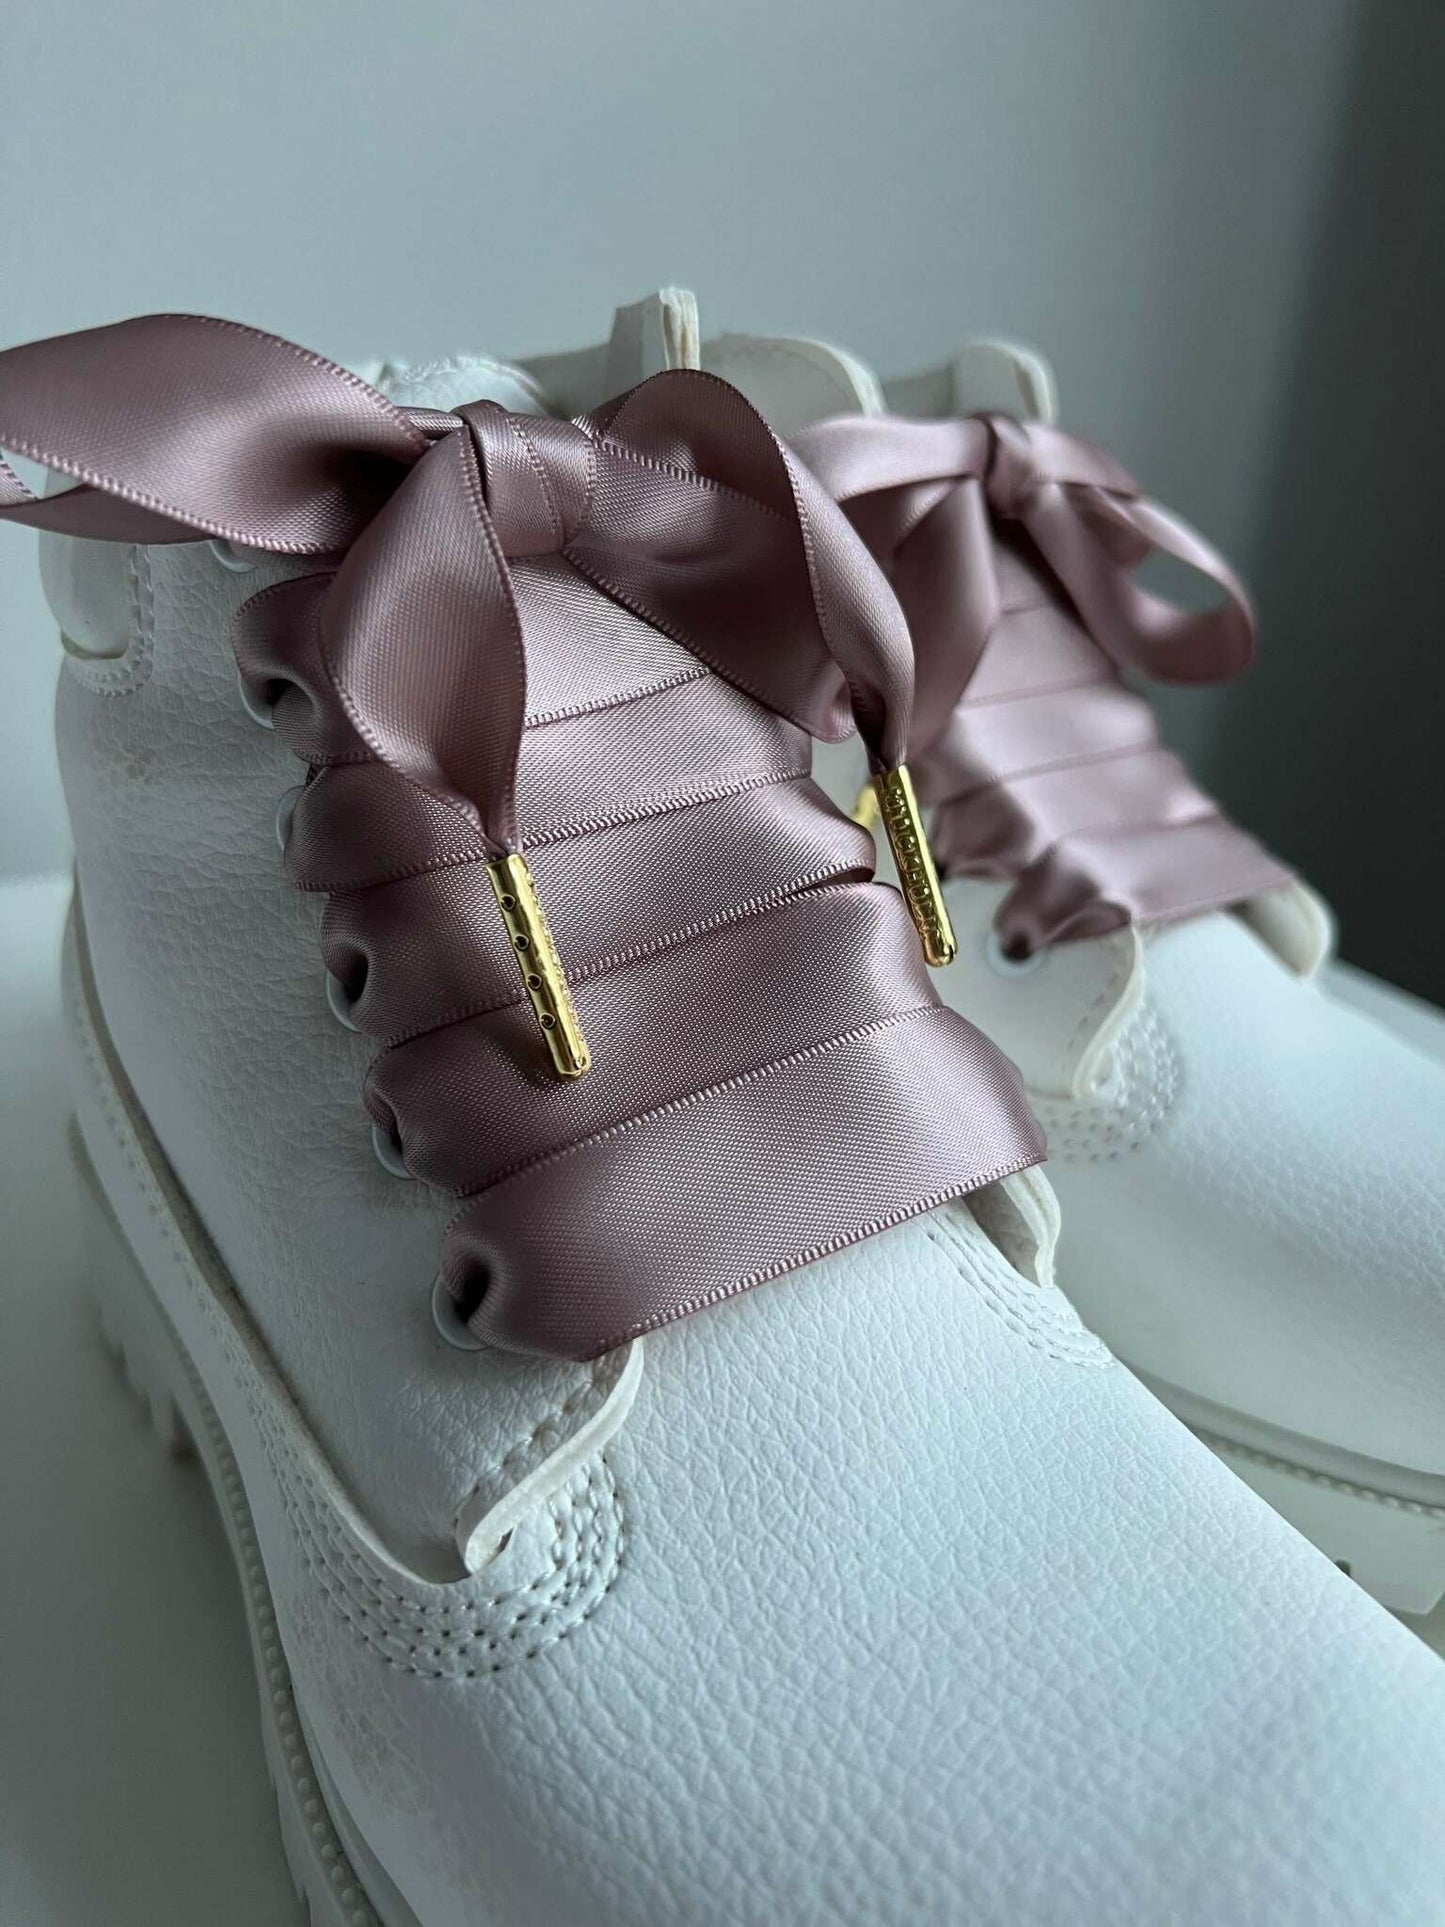 Nougat Mauve Silk Shoelaces - The Shoelace Brand